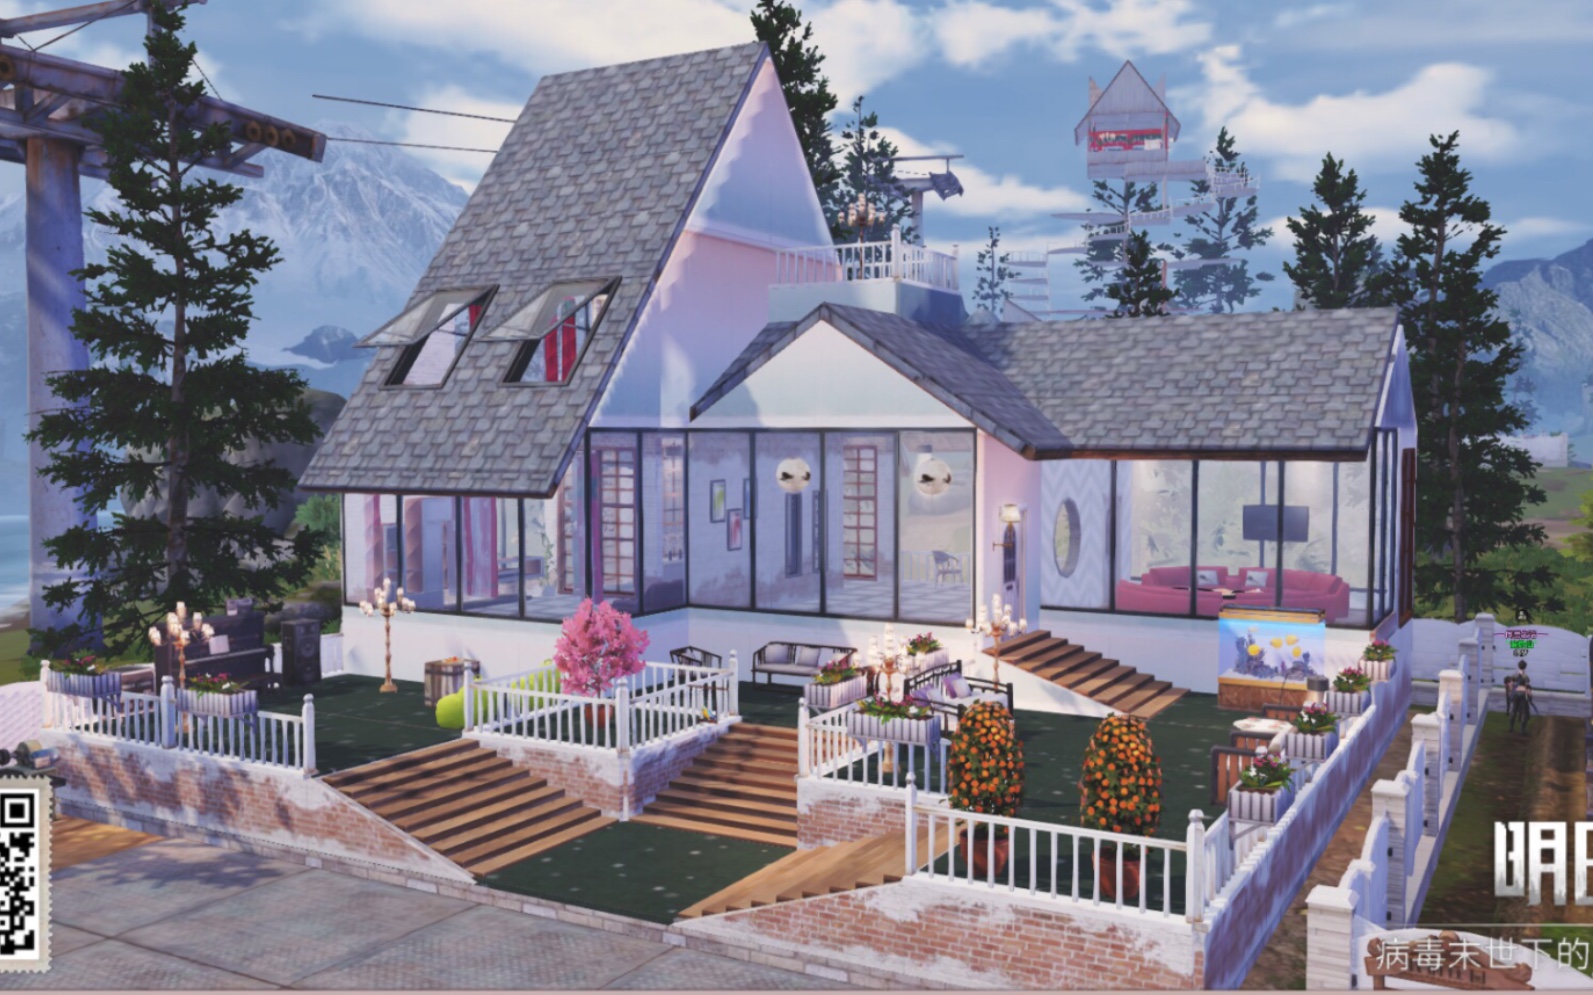 【明日之后】简单精致小房子,原创为月亮啊oo的作品「风情小镇」